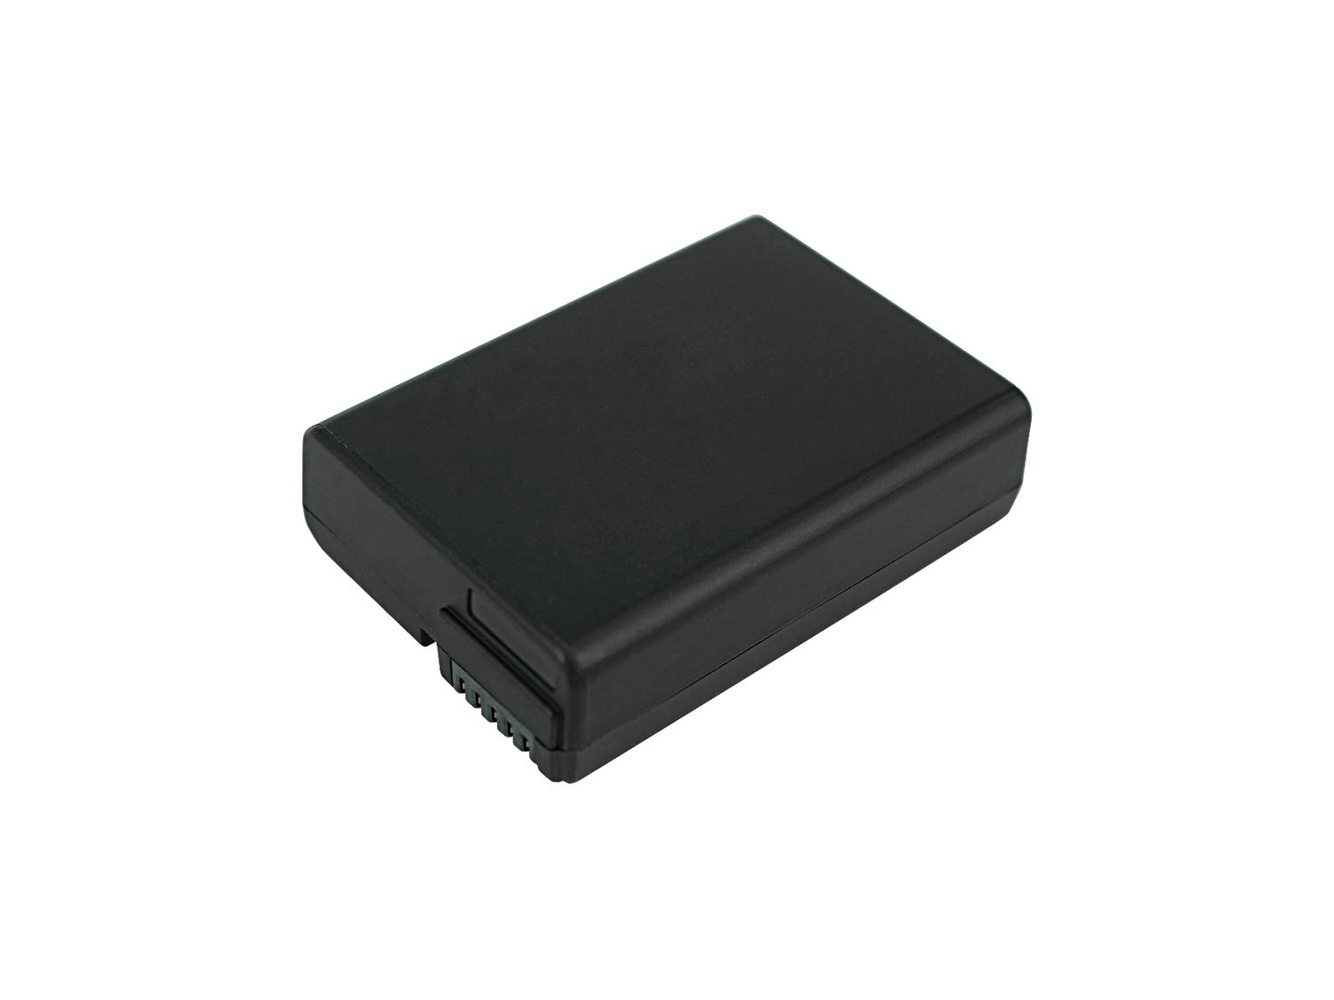 Reemplazo compatible para batería de cámara digital NIKON Coolpix P7000, Coolpix P7100, Coolpix P7700, Coolpix P7800, DSLR D3100, DSLR D3200, DSLR D5100, DSLR D5200, DSLR D5300